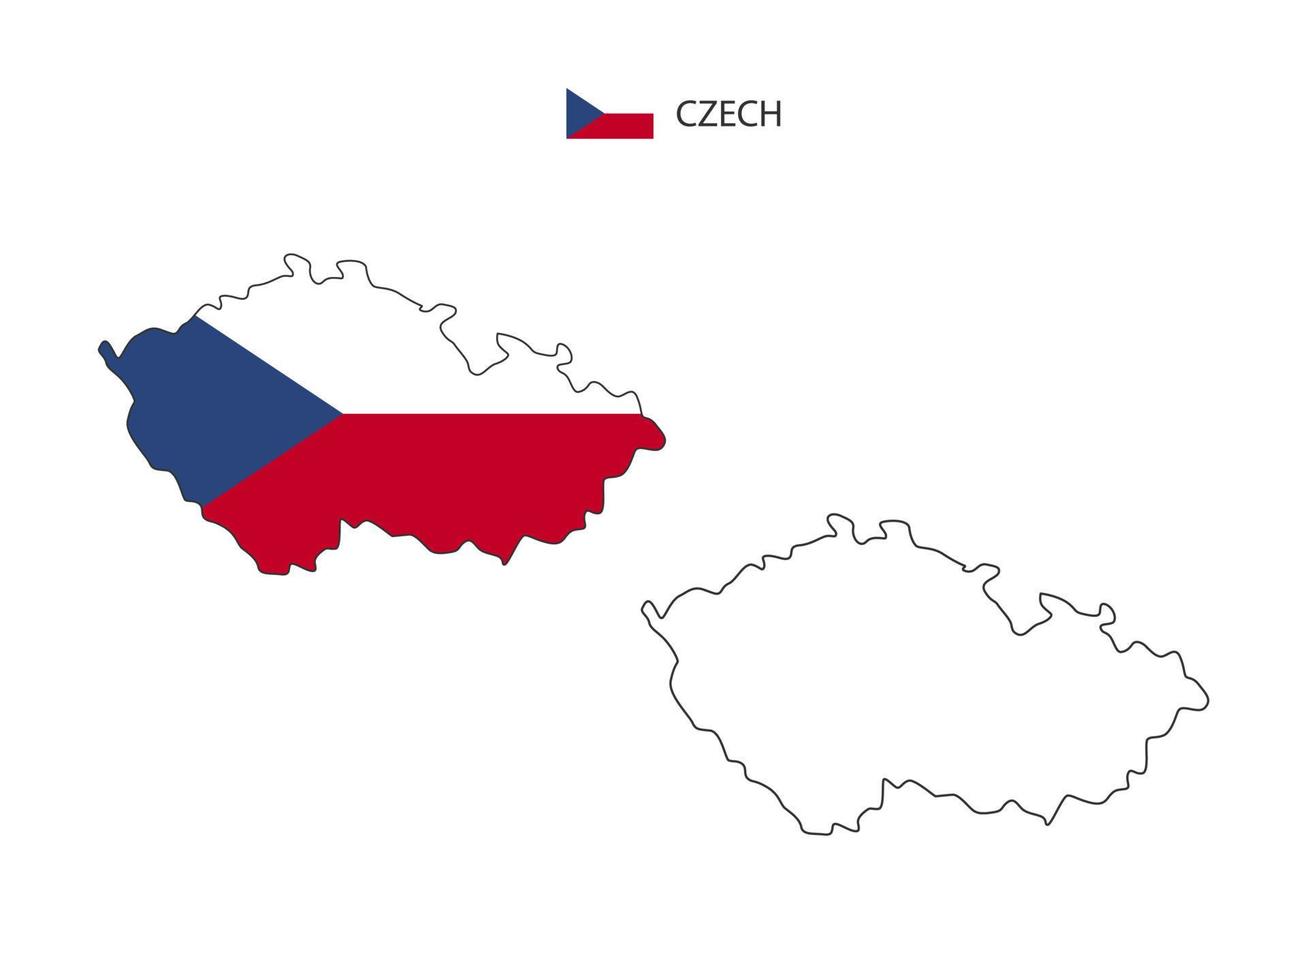 vetor da cidade do mapa checo dividido pelo estilo de simplicidade do contorno. tem 2 versões, versão de linha fina preta e cor da versão da bandeira do país. ambos os mapas estavam no fundo branco.